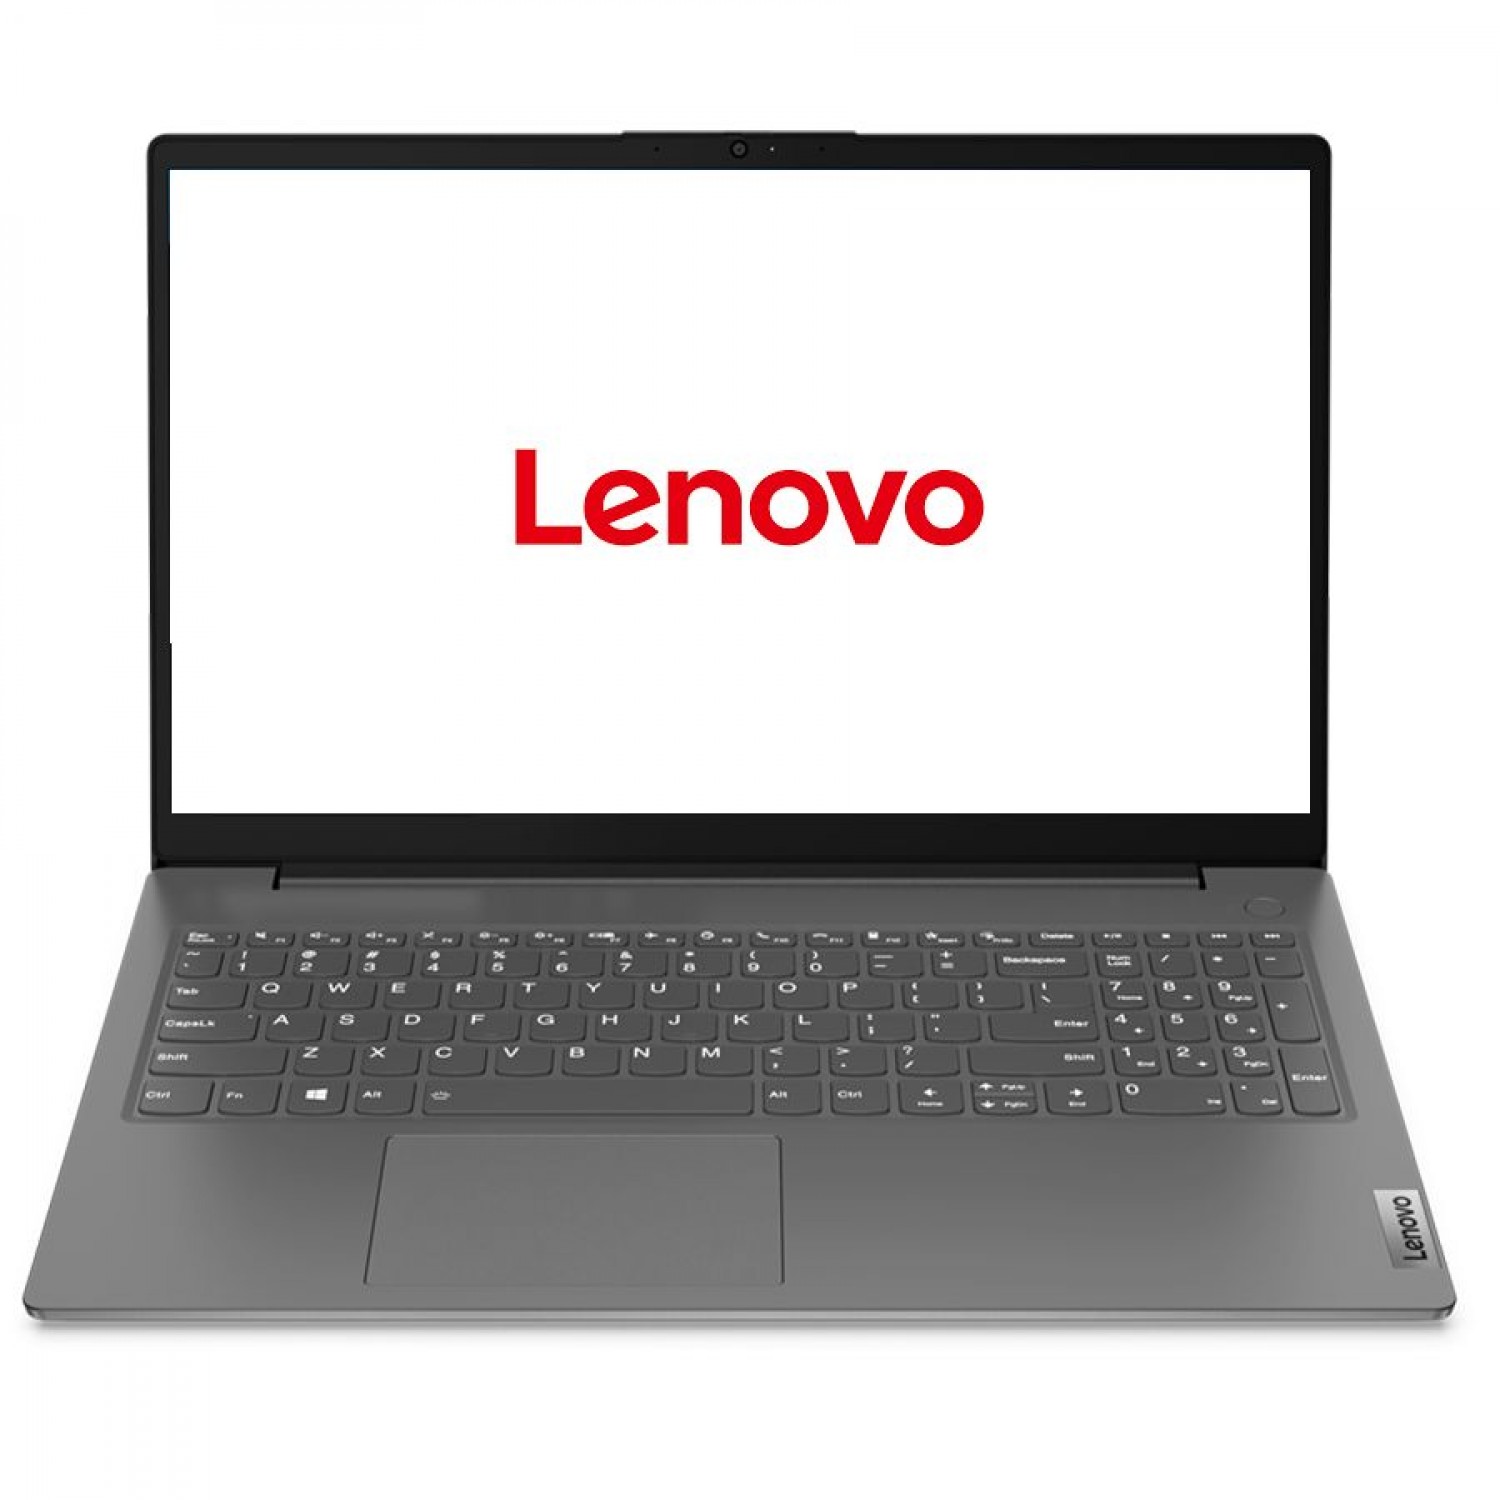 Lenovo i3 1115g4. Lenovo v15 g2 ITL. Ноутбук Lenovo v15 g2 ITL. Lenovo i3-1115g. Ноутбук для бизнеса Lenovo v15 g2 ITL (82kba002ih).